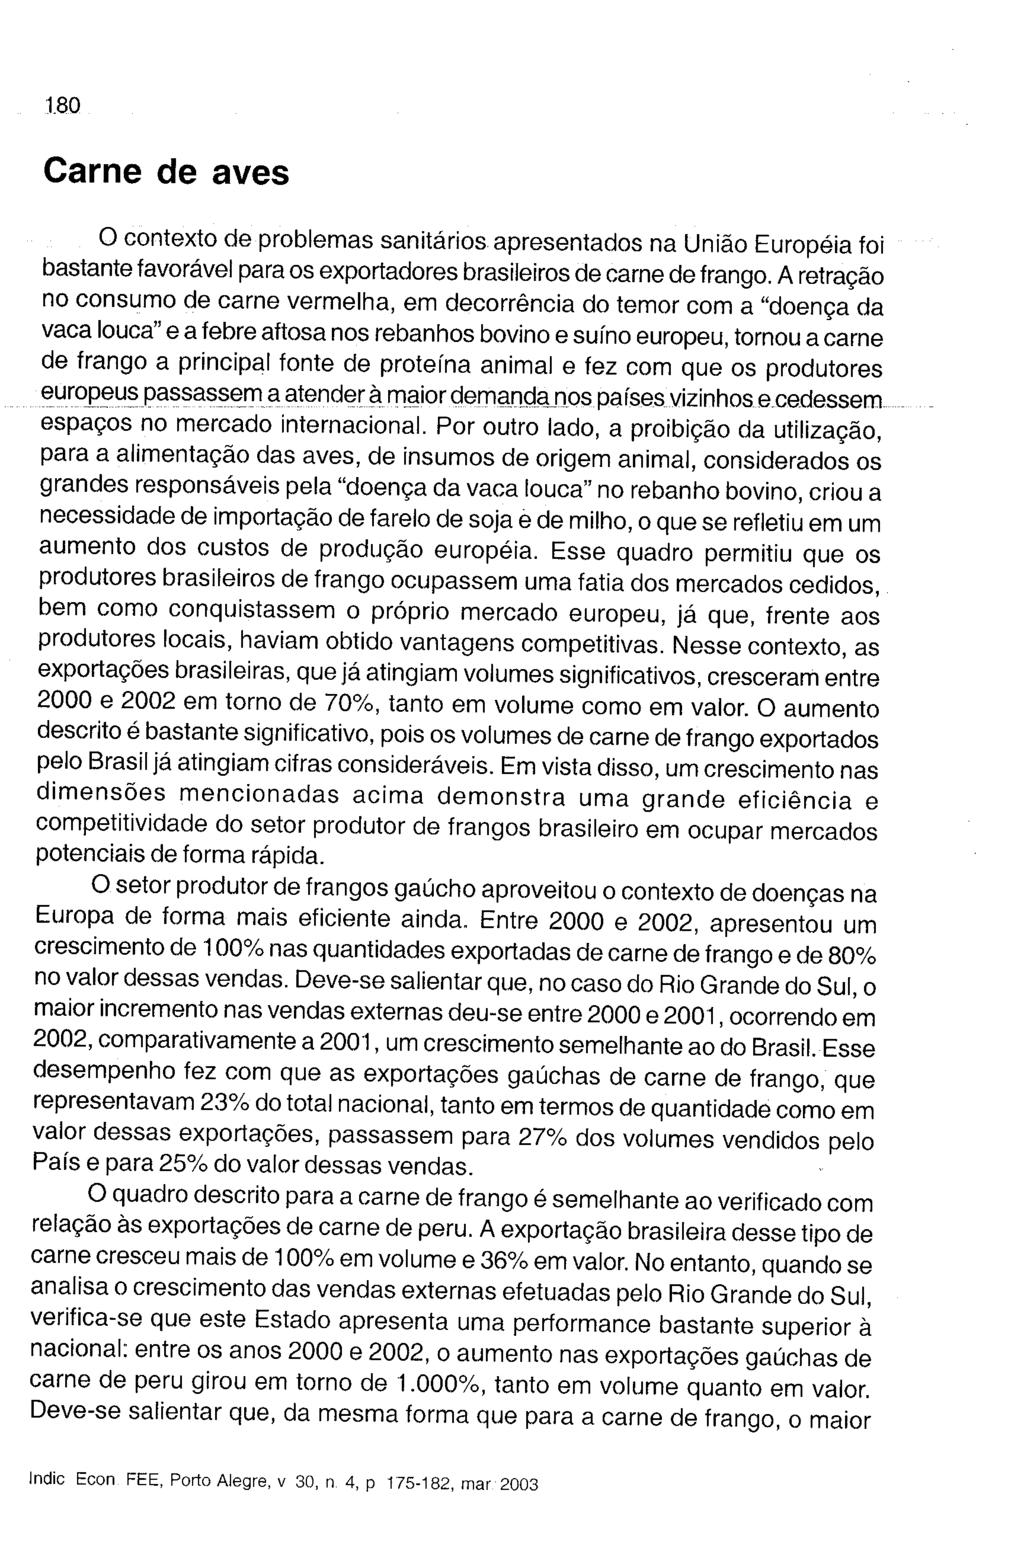 o contexto de problemas sanitários apresentados na União Européia foi bastante favorável para os exportadores brasileiros de carne de frango.